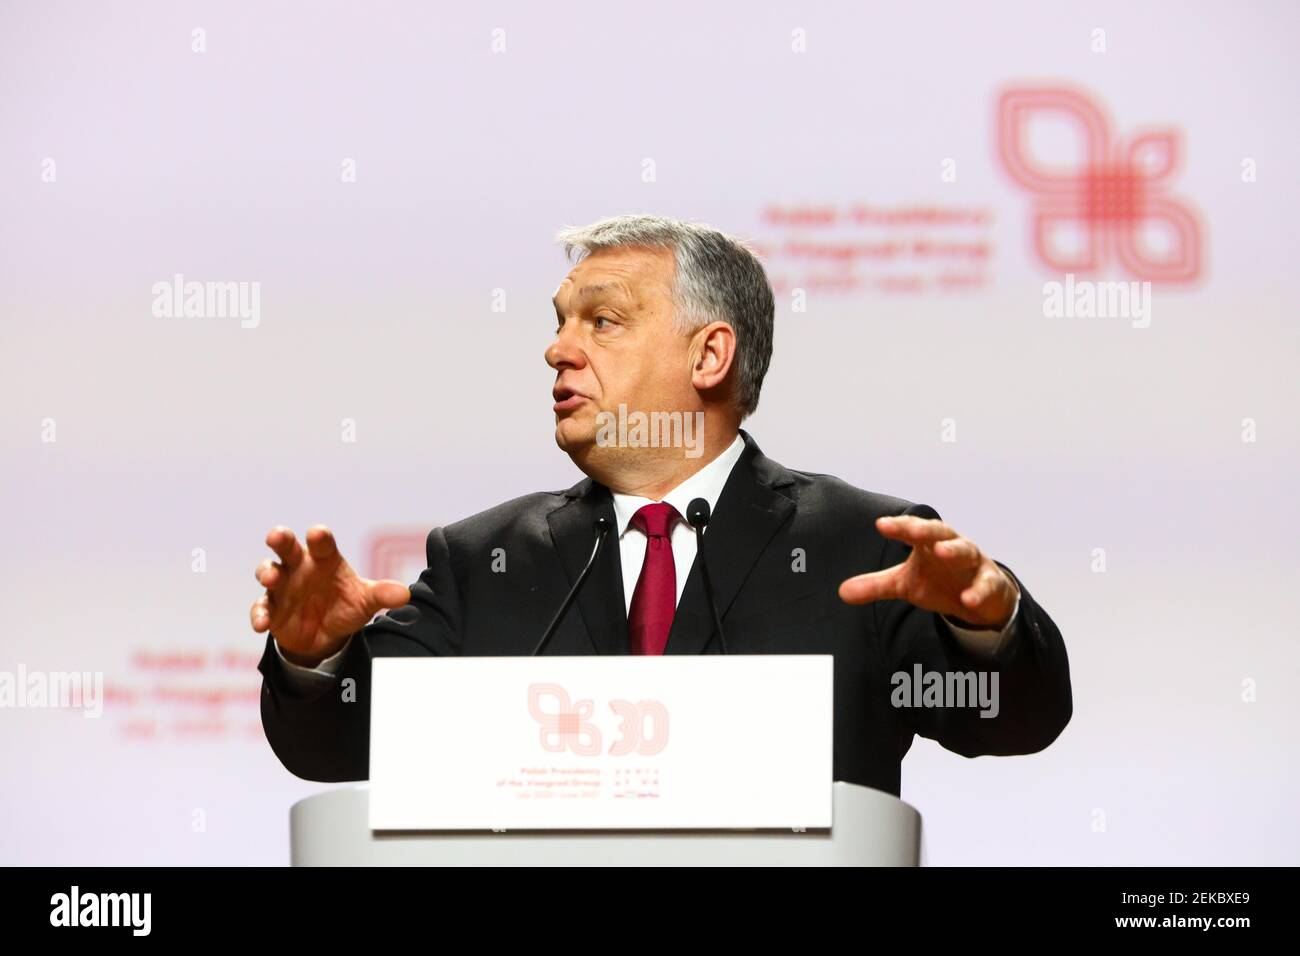 Der ungarische Ministerpräsident Victor Orban spricht während der Pressekonferenz. Gipfeltreffen der Regierungschefs der Visegrad-Gruppe (V4) anlässlich der Stockfoto